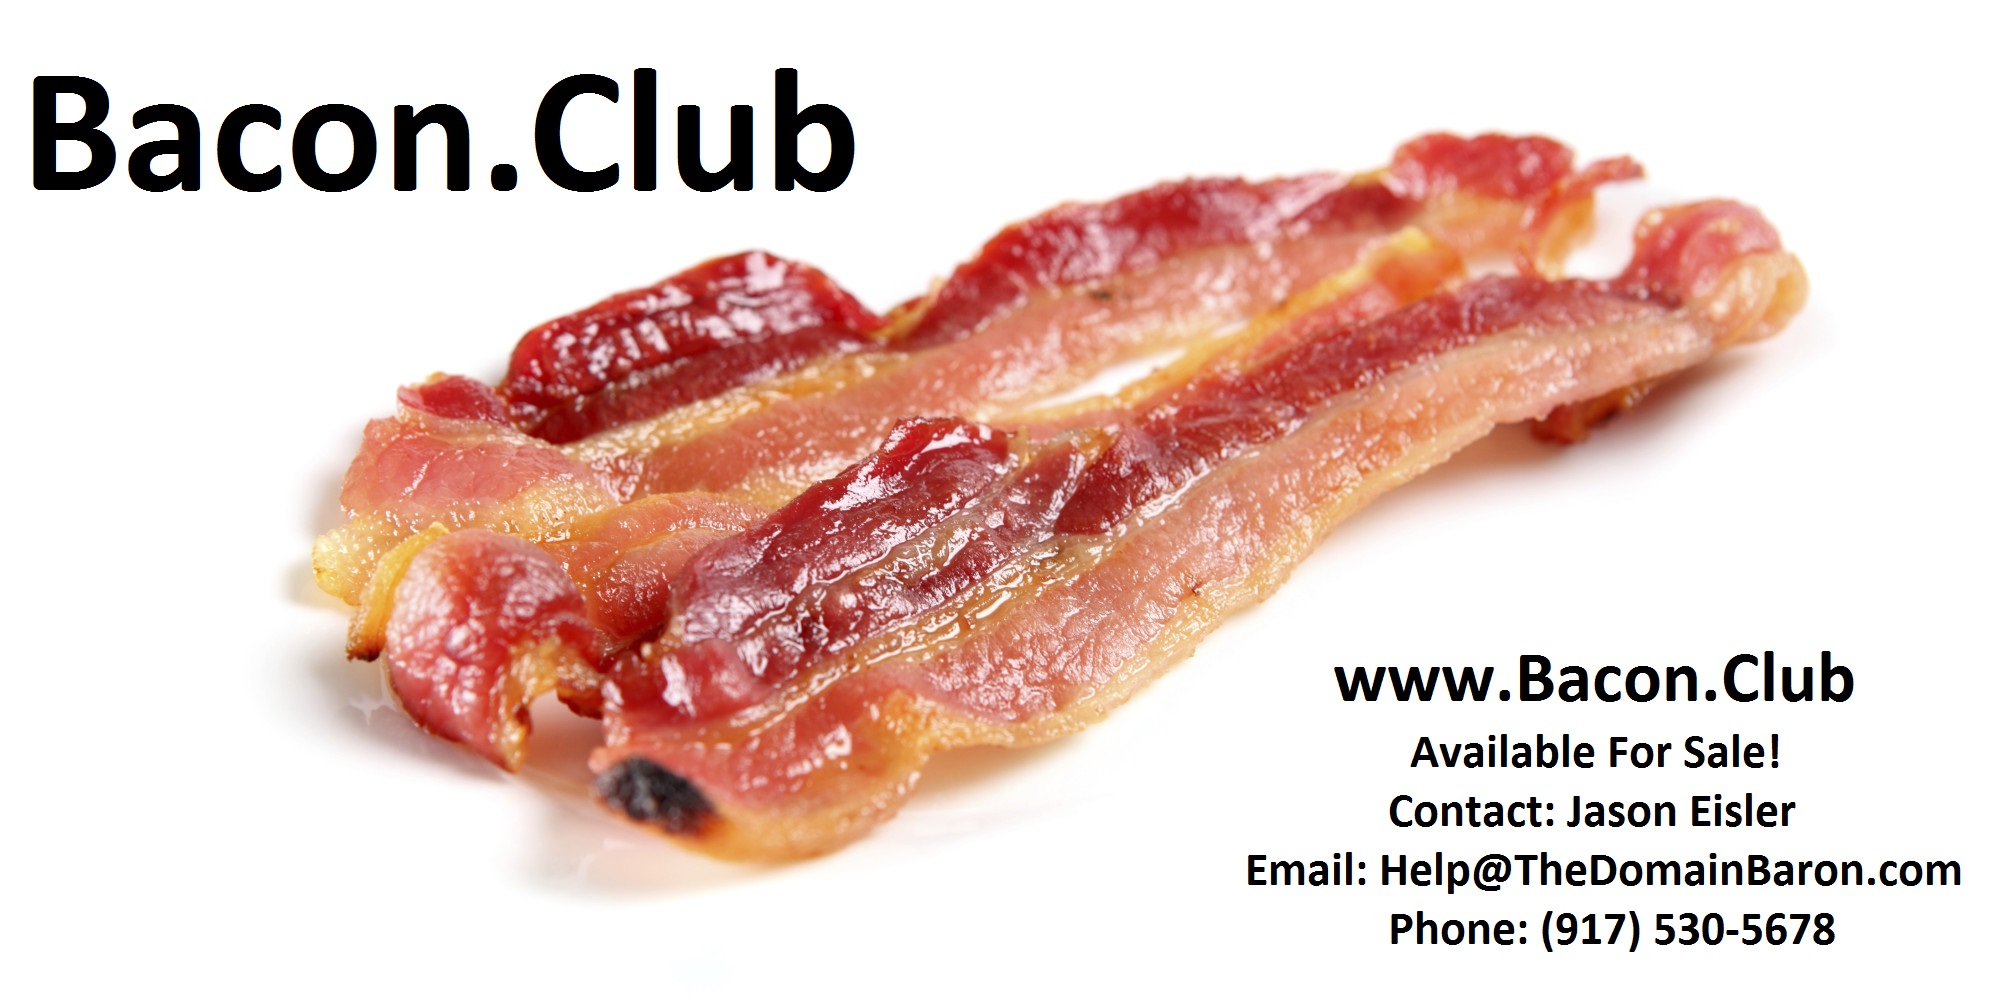 baconclub.jpg